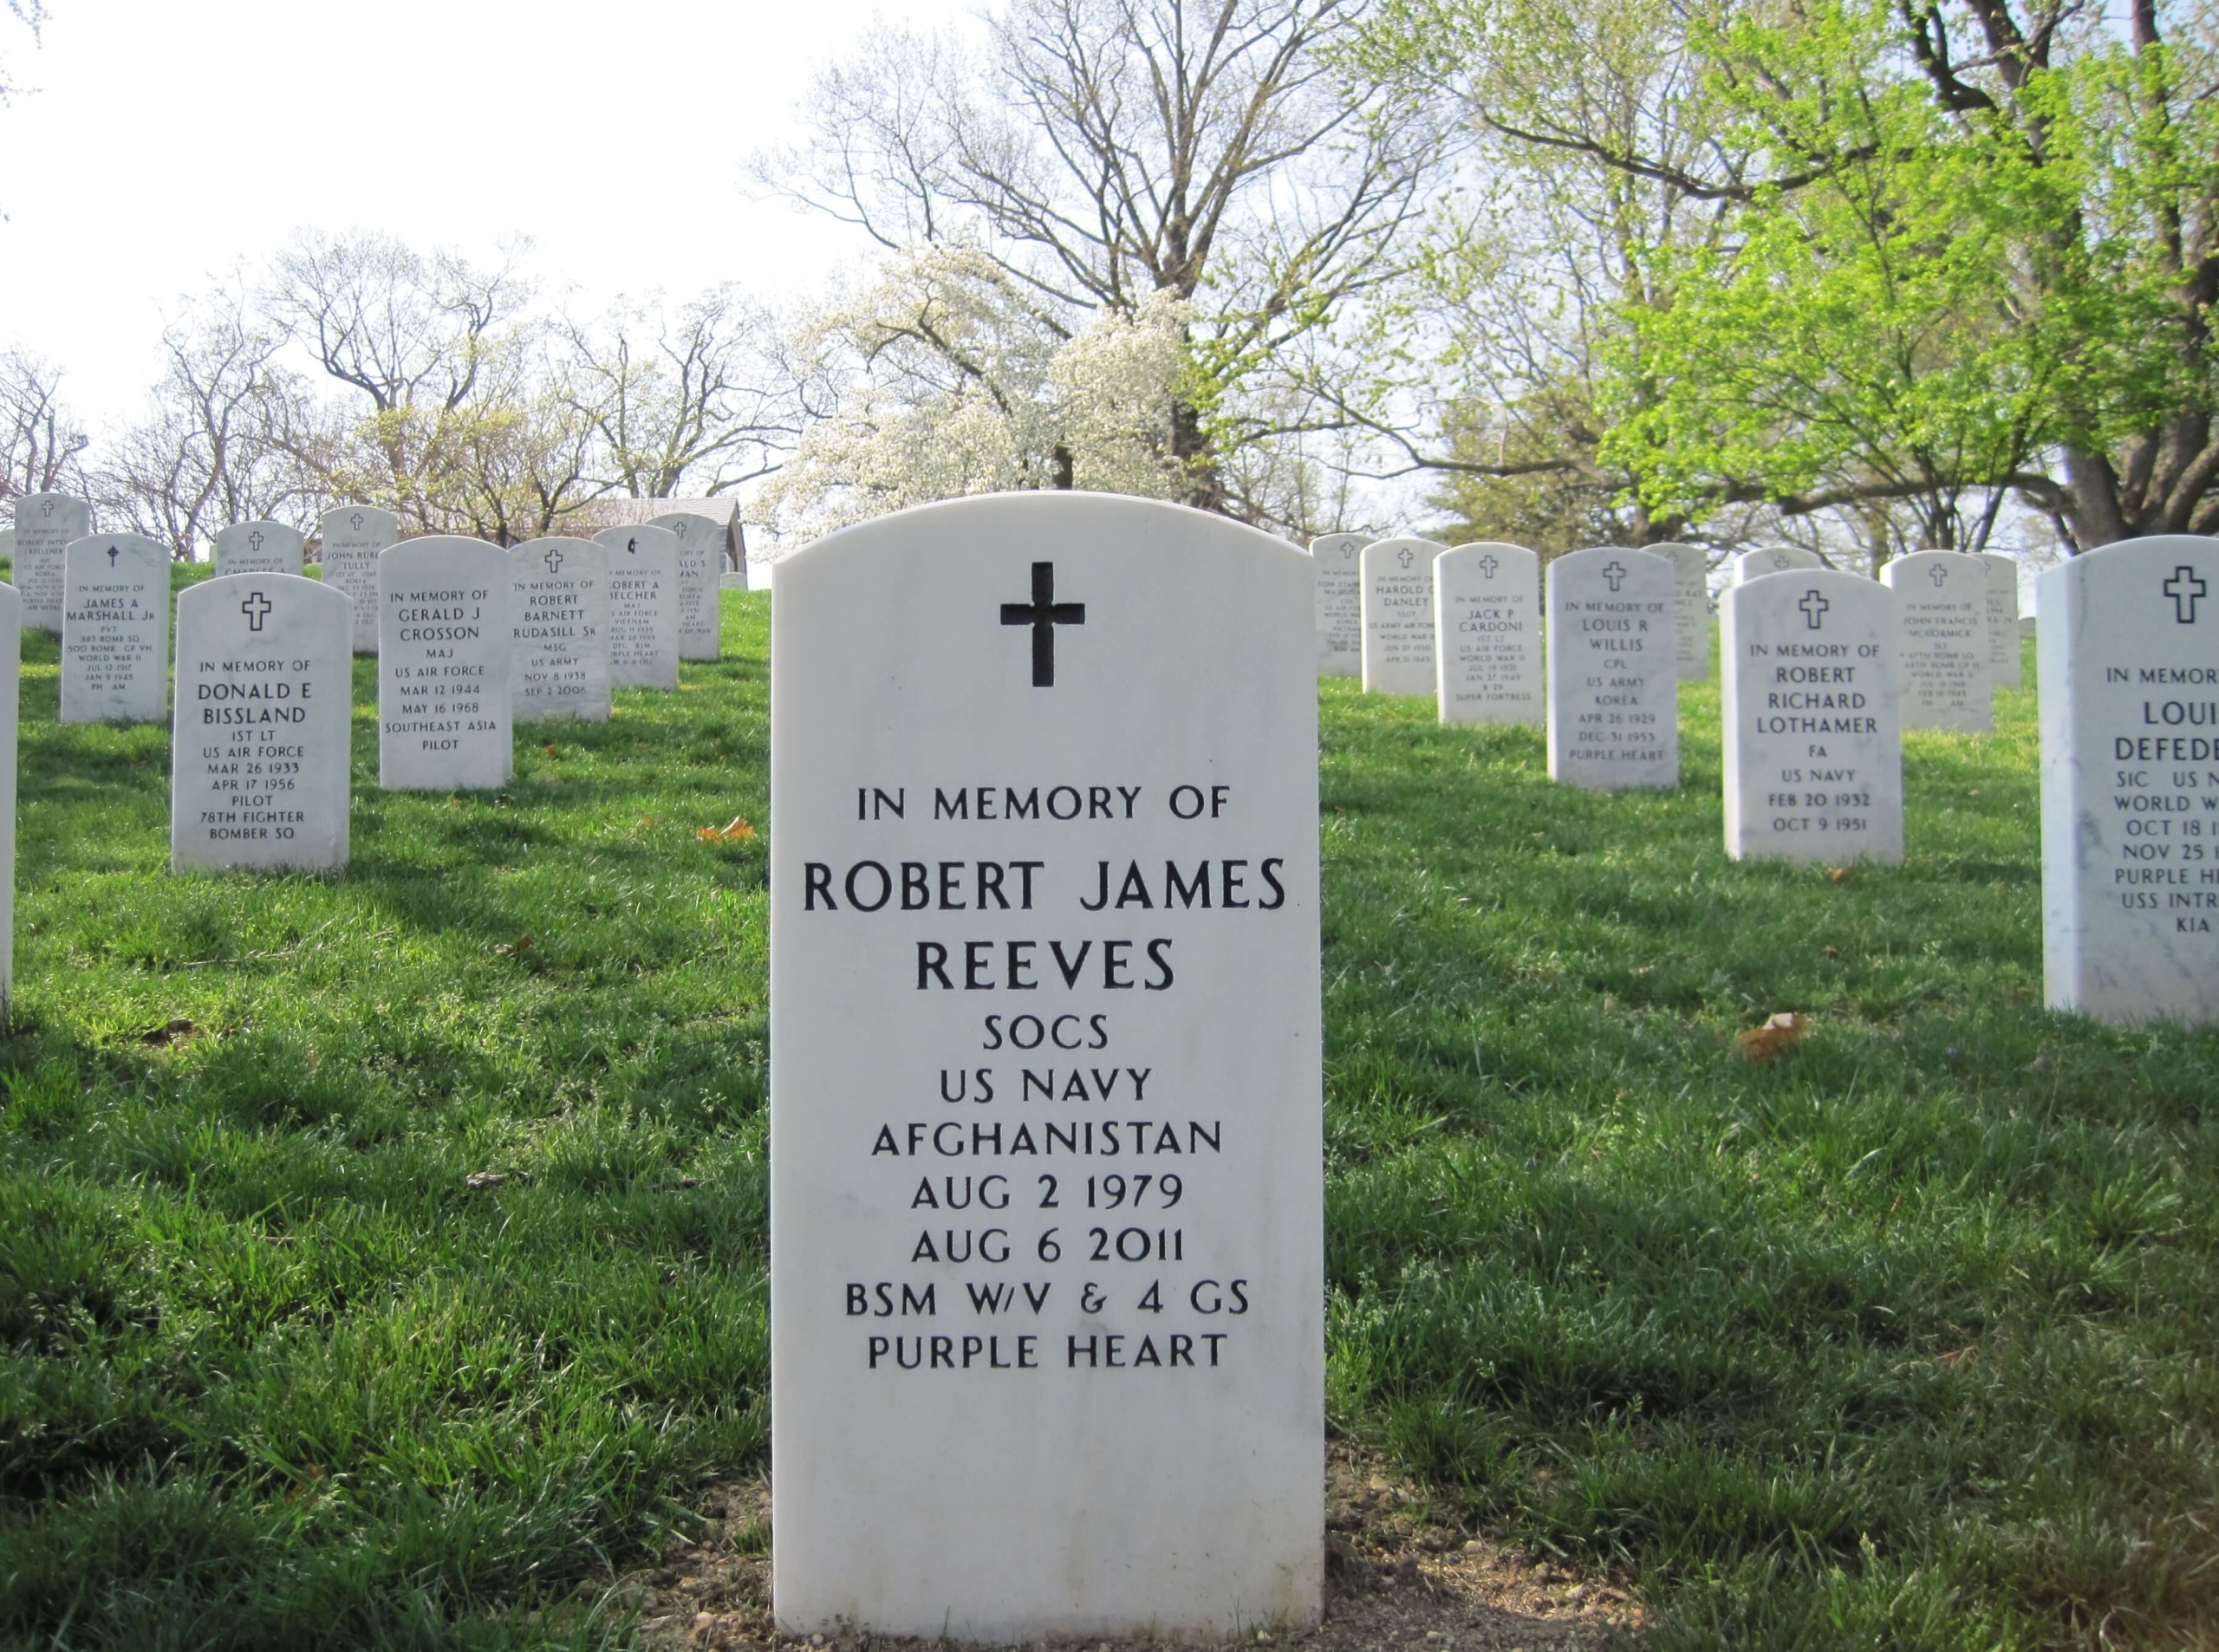 rjreeves-gravesite-photo-by-eileen-horan-april-2012-002